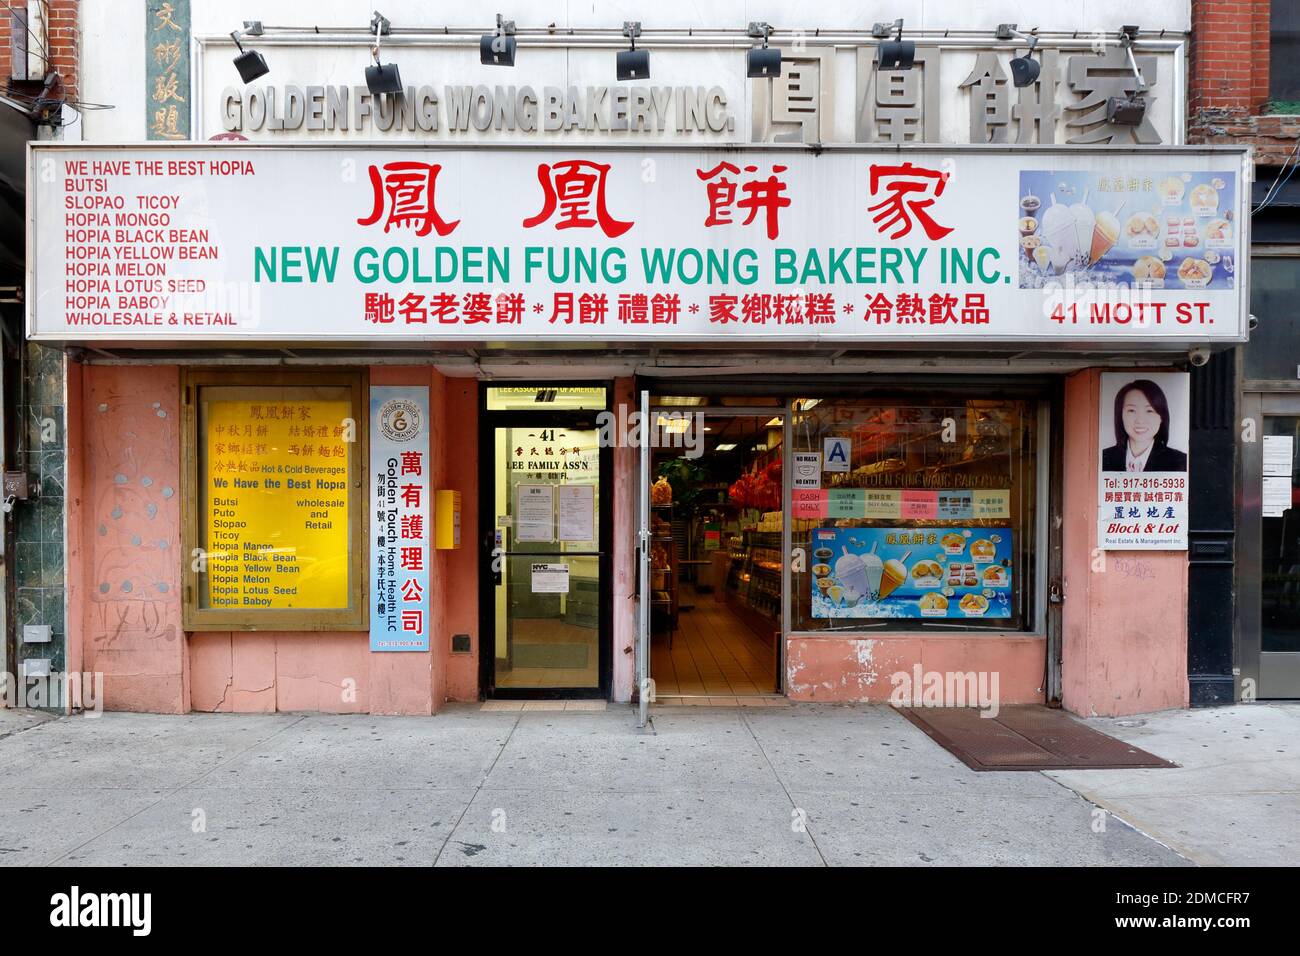 Golden Fung Wong Bakery 鳳凰餅家, 41 Mott St, New York, NYC Schaufensterfoto einer chinesischen Bäckerei in Manhattan Chinatown. Stockfoto